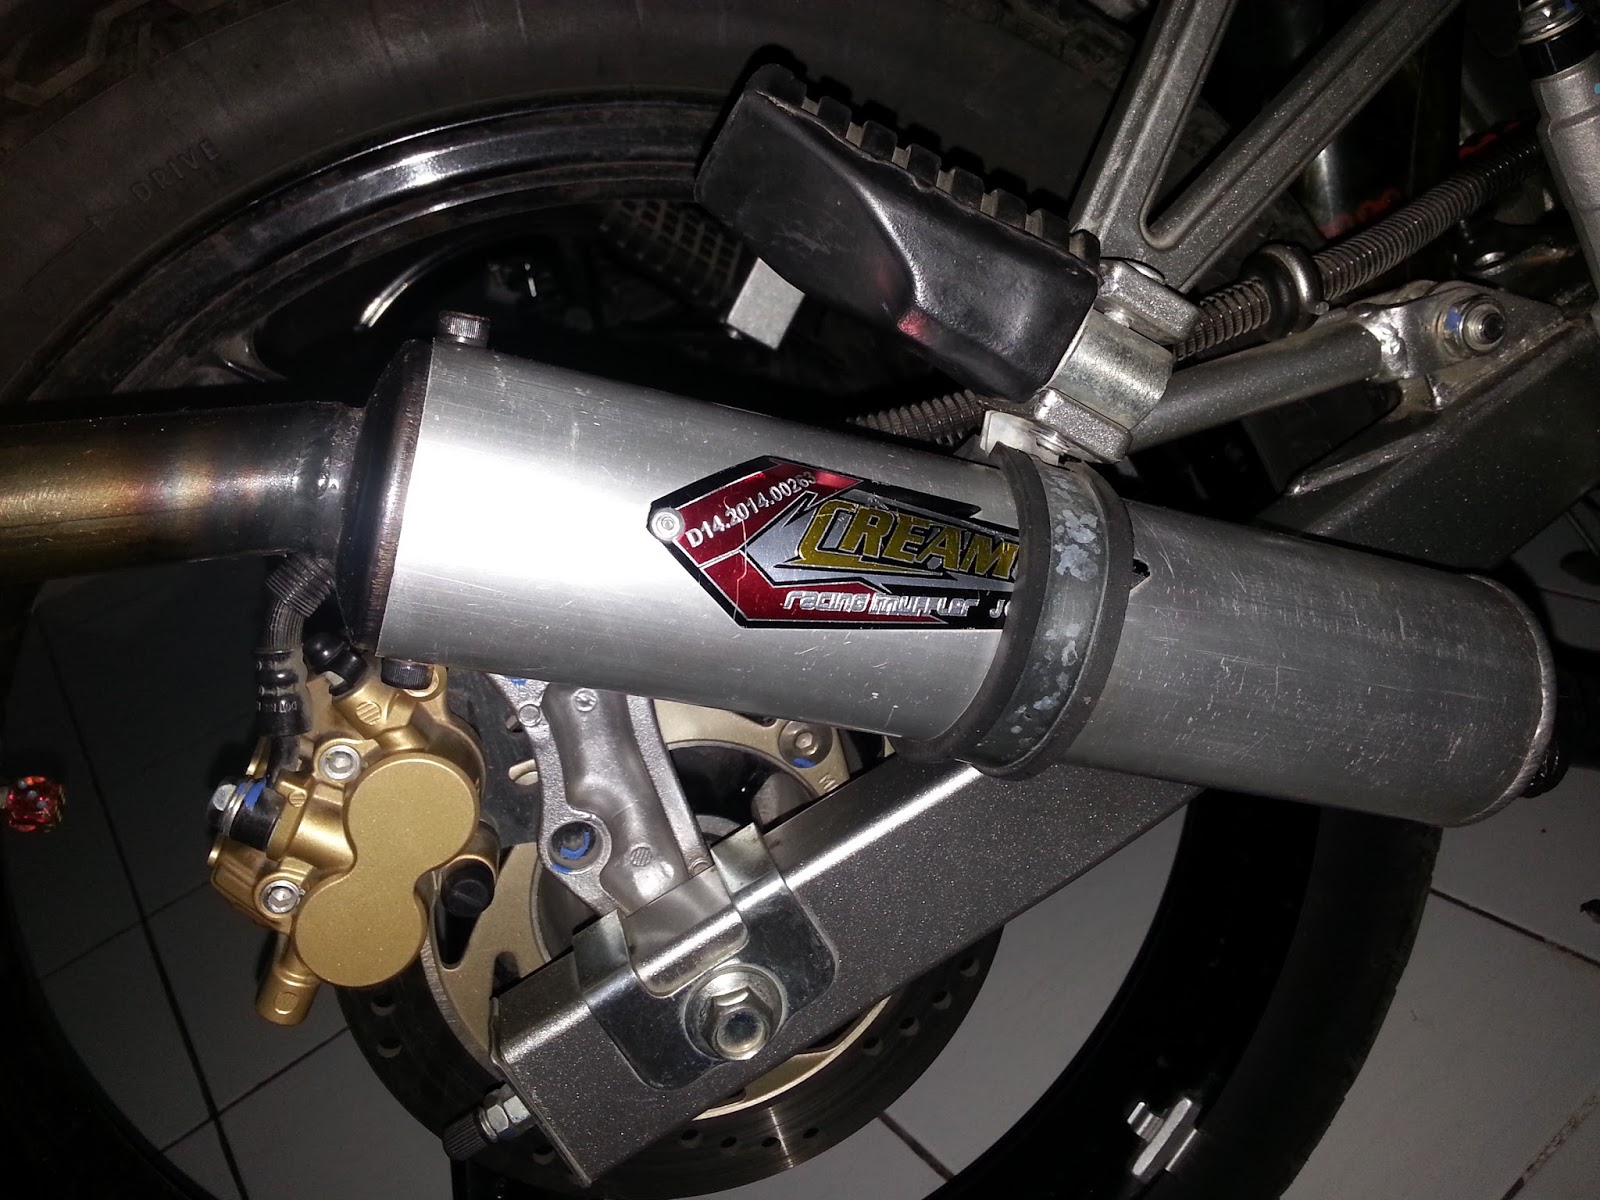  Cara Memilih Knalpot Racing Kawasaki Ninja 150RR